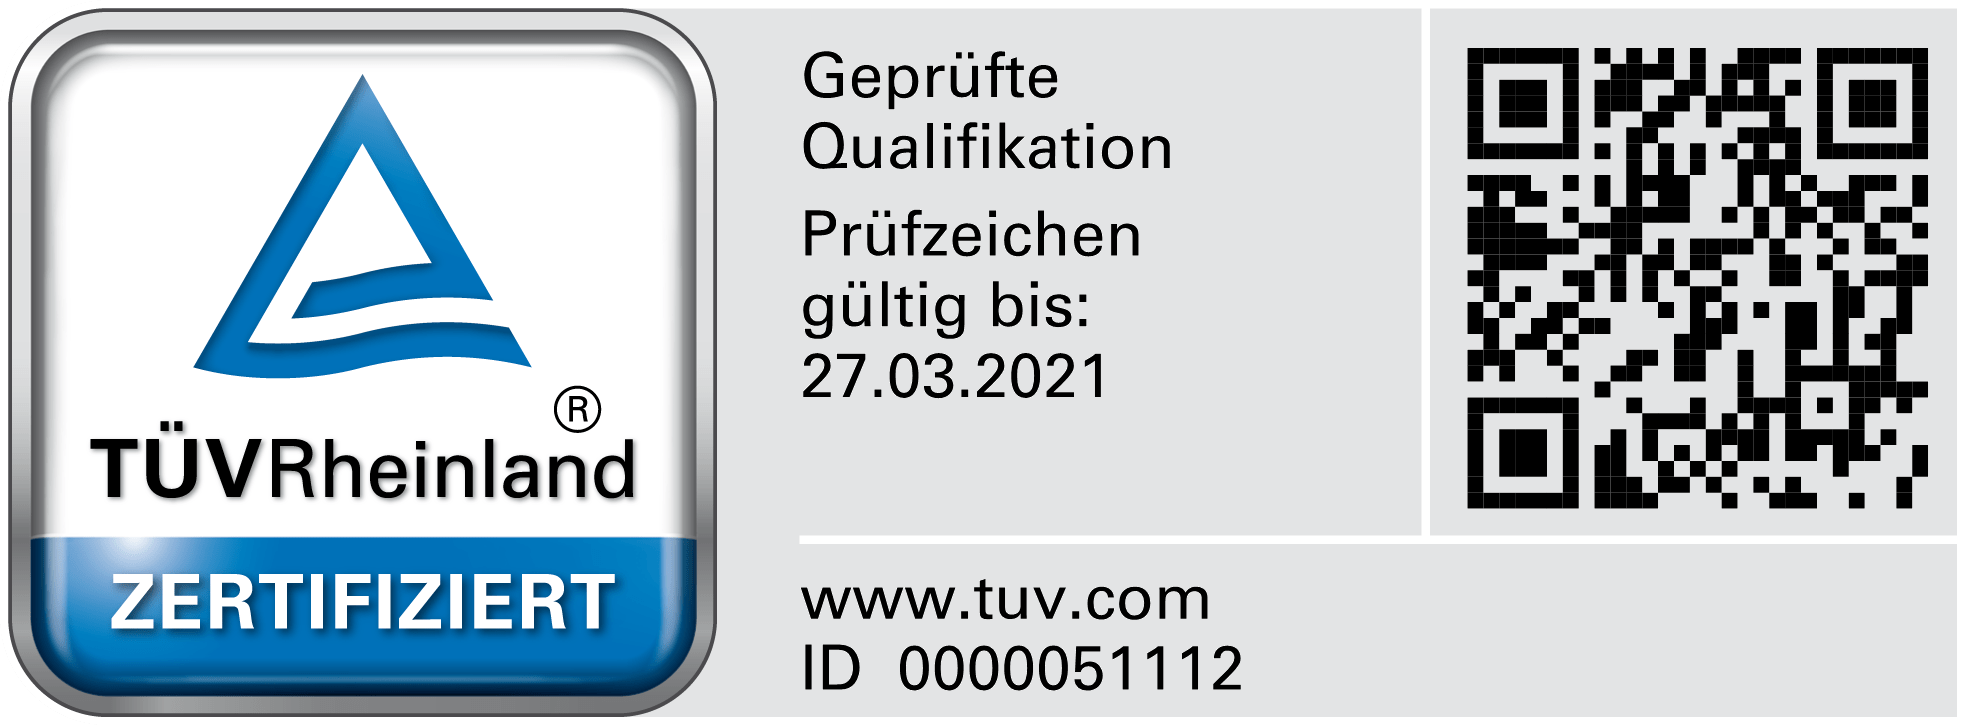 TÜV-Rheinland zertifizierung nach DIN 17024